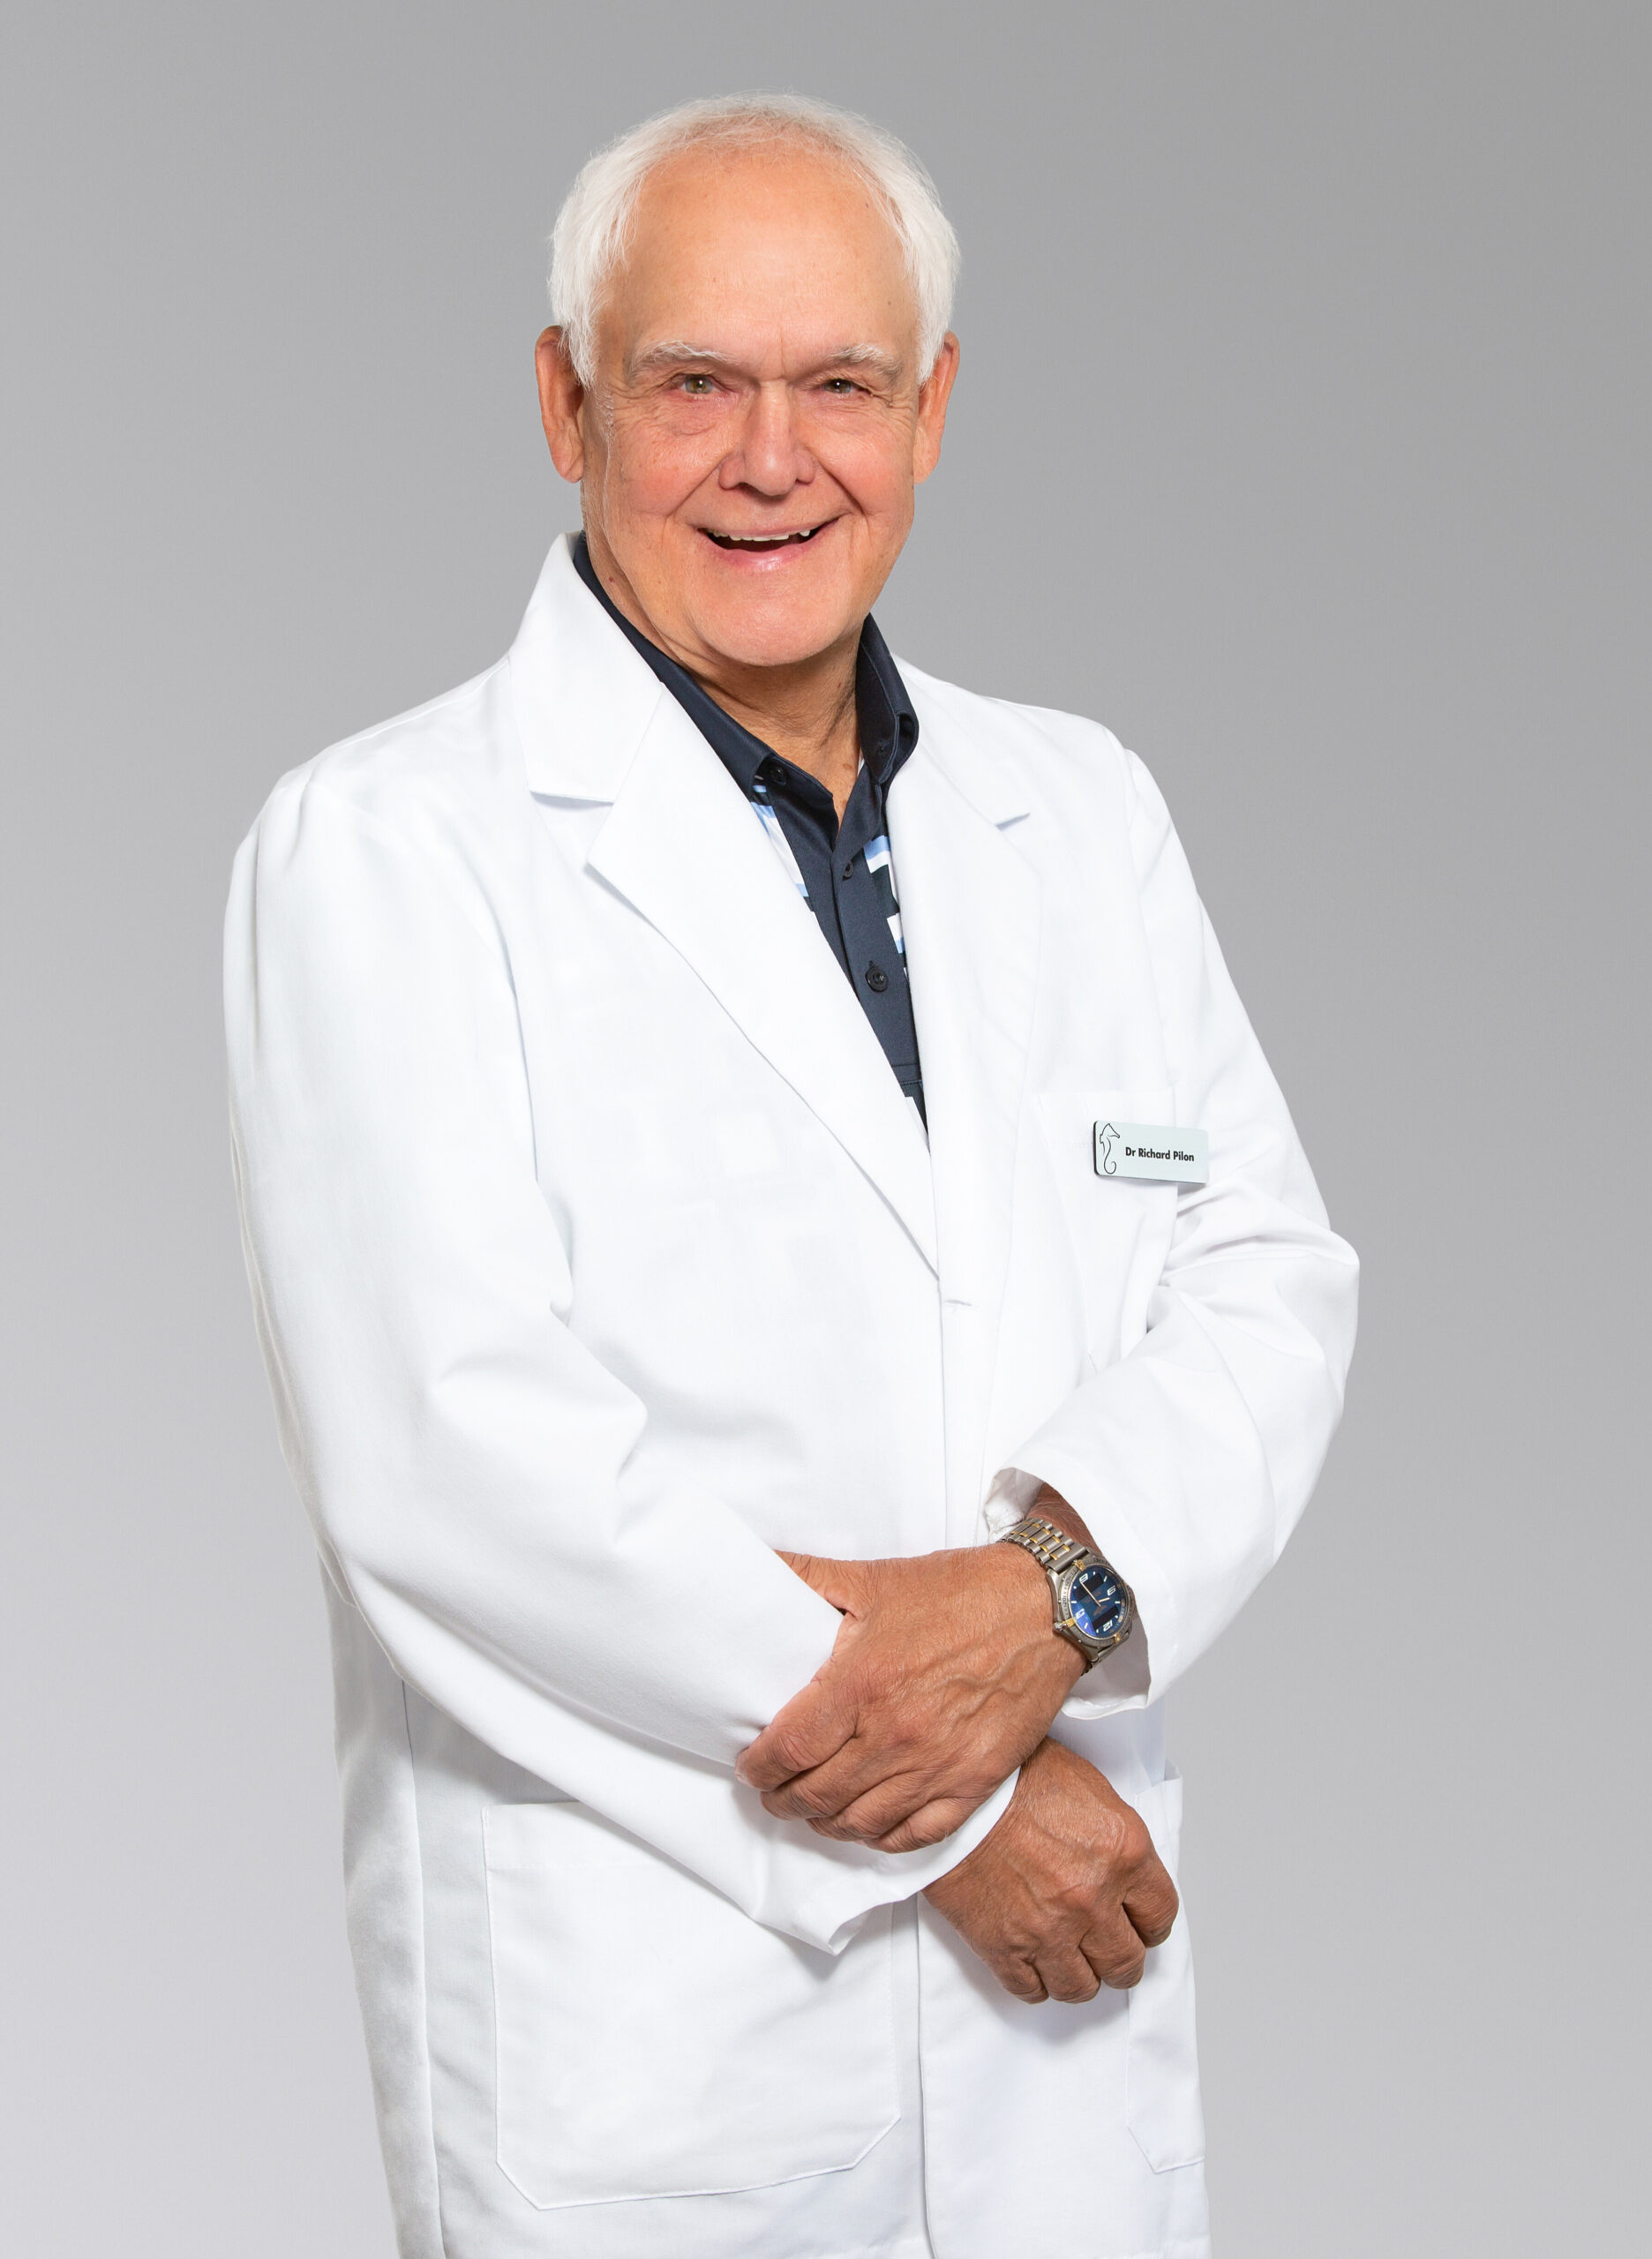 Dr. Richard Pilon